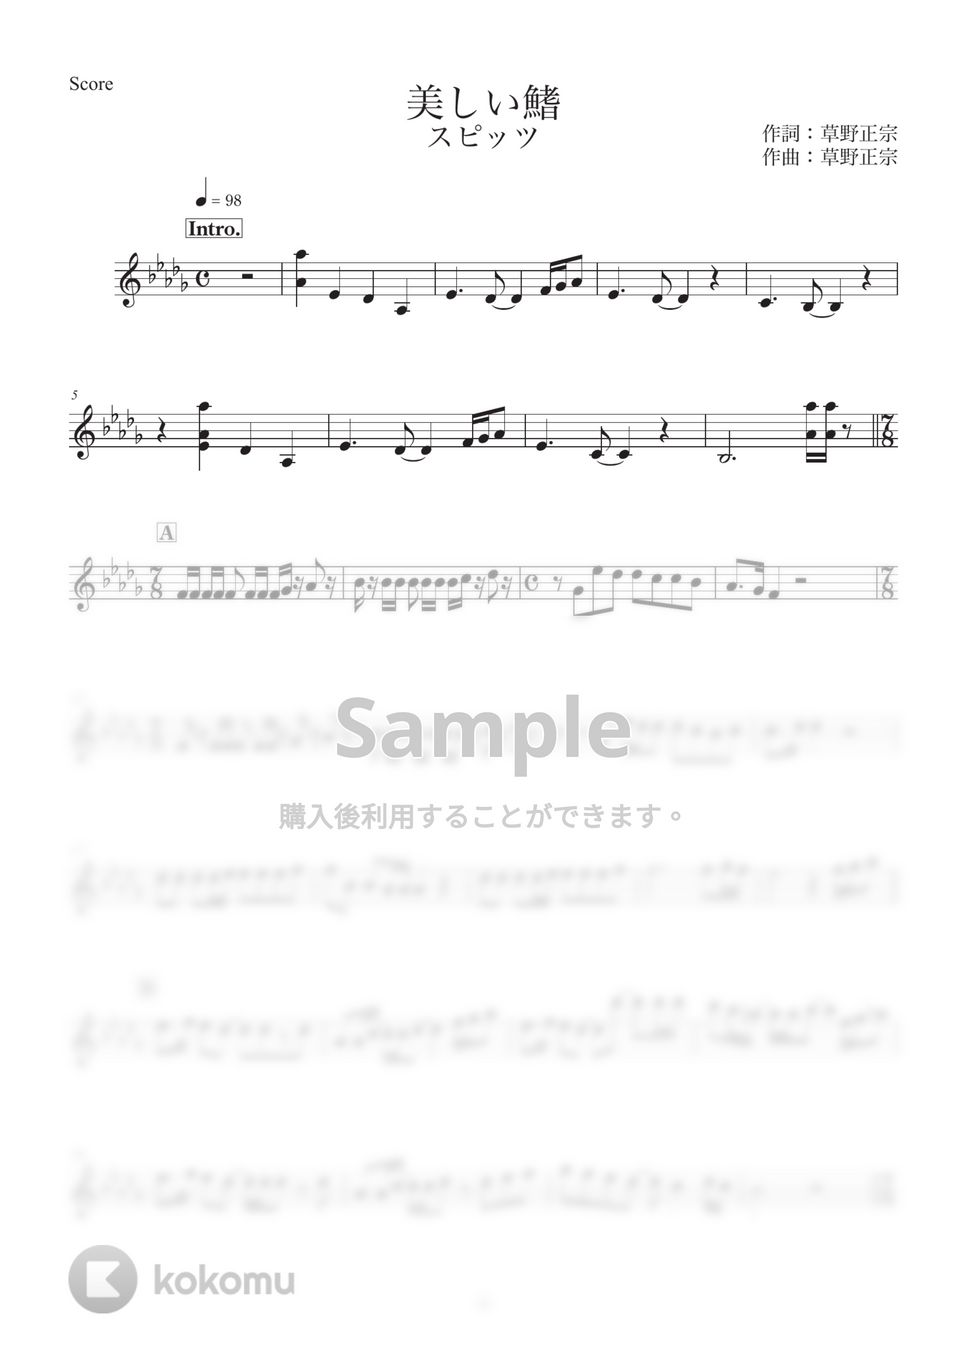 スピッツ - 美しい鰭 (メロディー譜) by Tsunomo